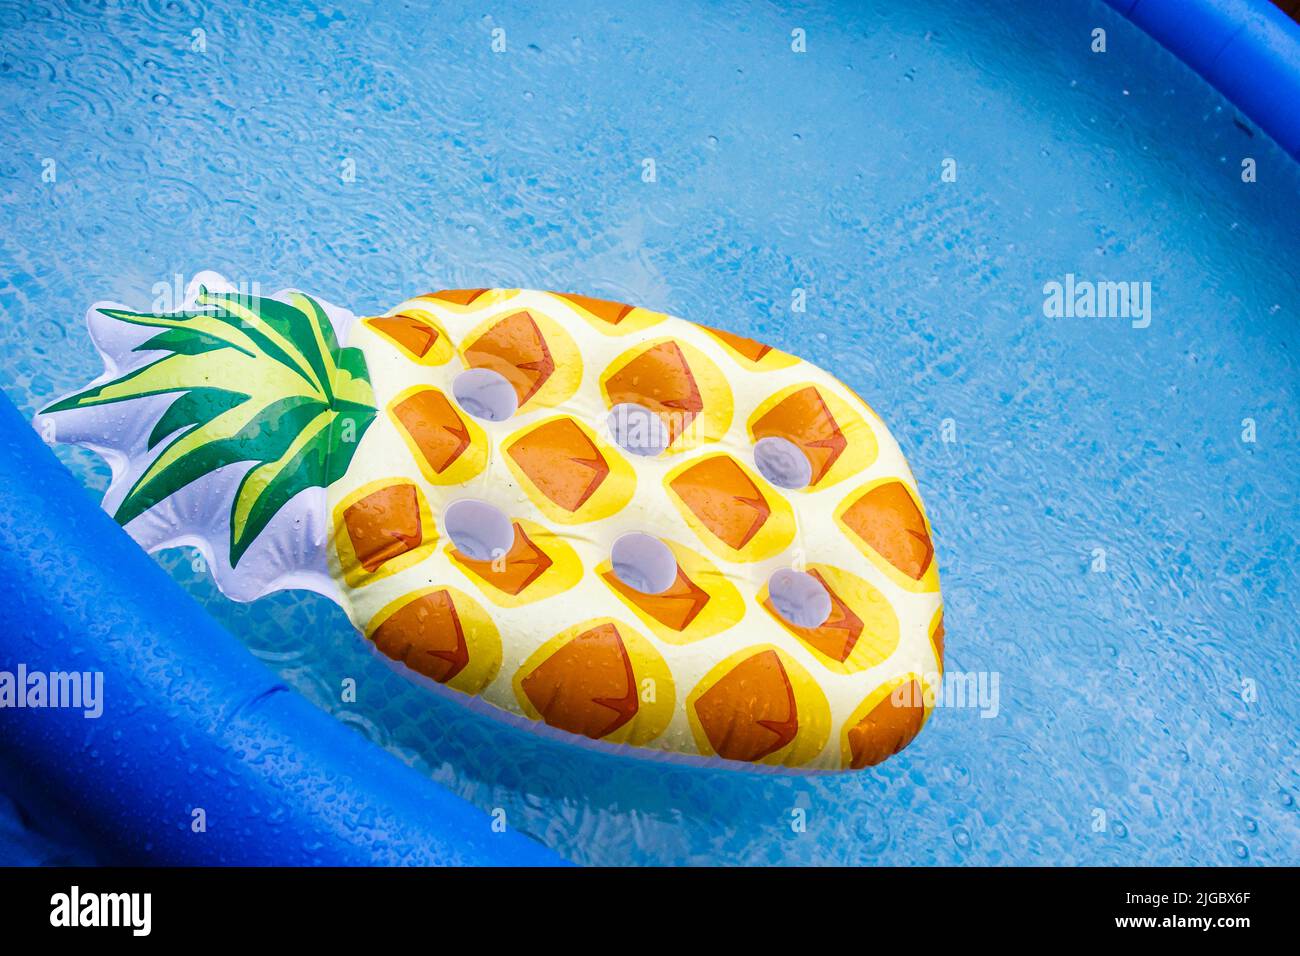 Float-Matratzen im Pool, es regnet. Blauer aufblasbarer Pool eine aufblasbare Matratze in Form einer Ananas schwebt im Pool. Stockfoto